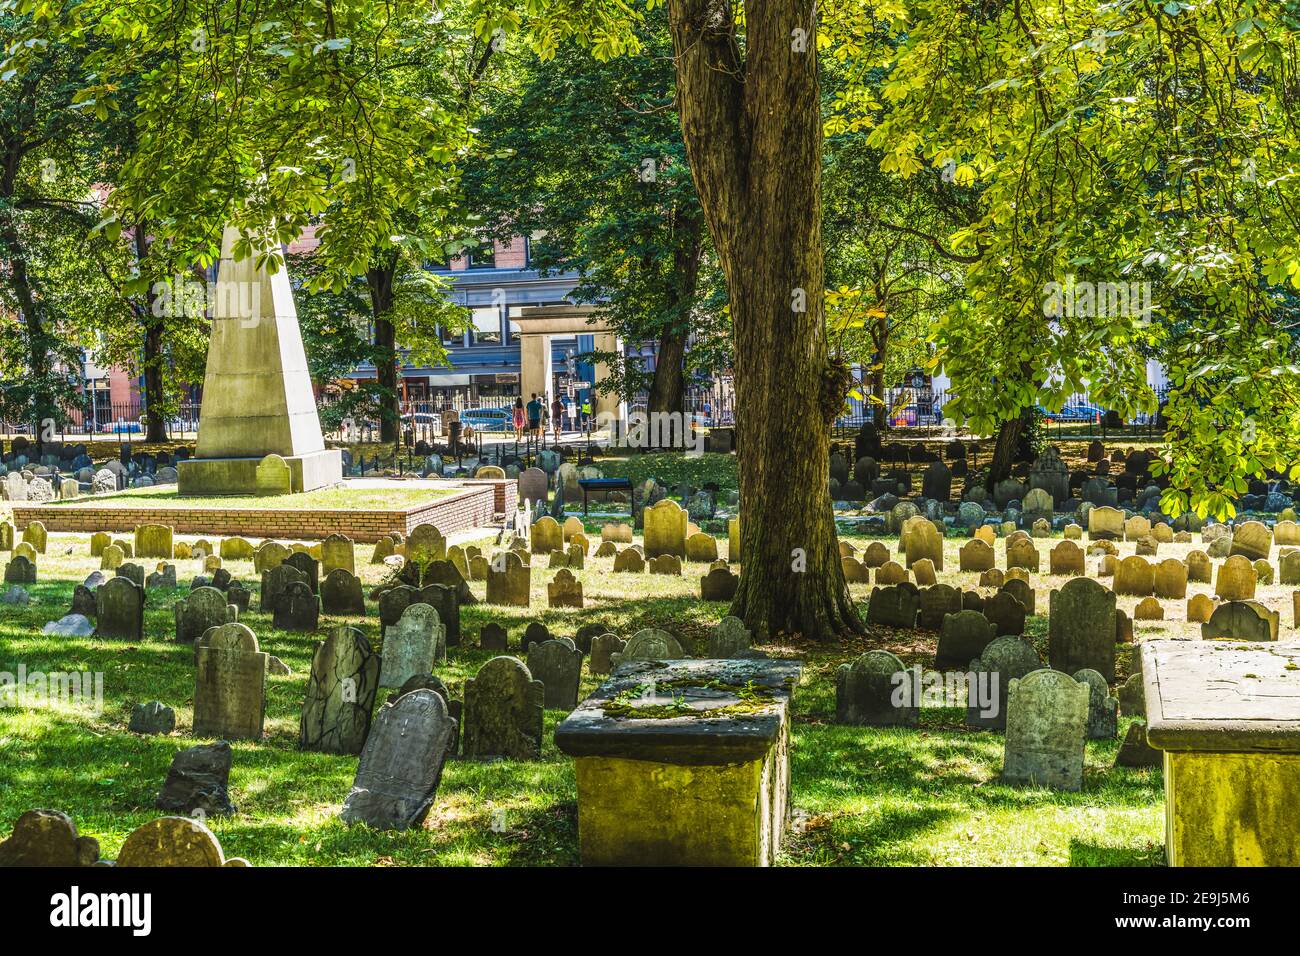 Granary Burying Ground Boston Massachusetts. Vecchio cimitero del 1660 dove sono sepolti gli eroi della Rivoluzione americana, tra cui Paul Revere, Sam Adams e John Foto Stock